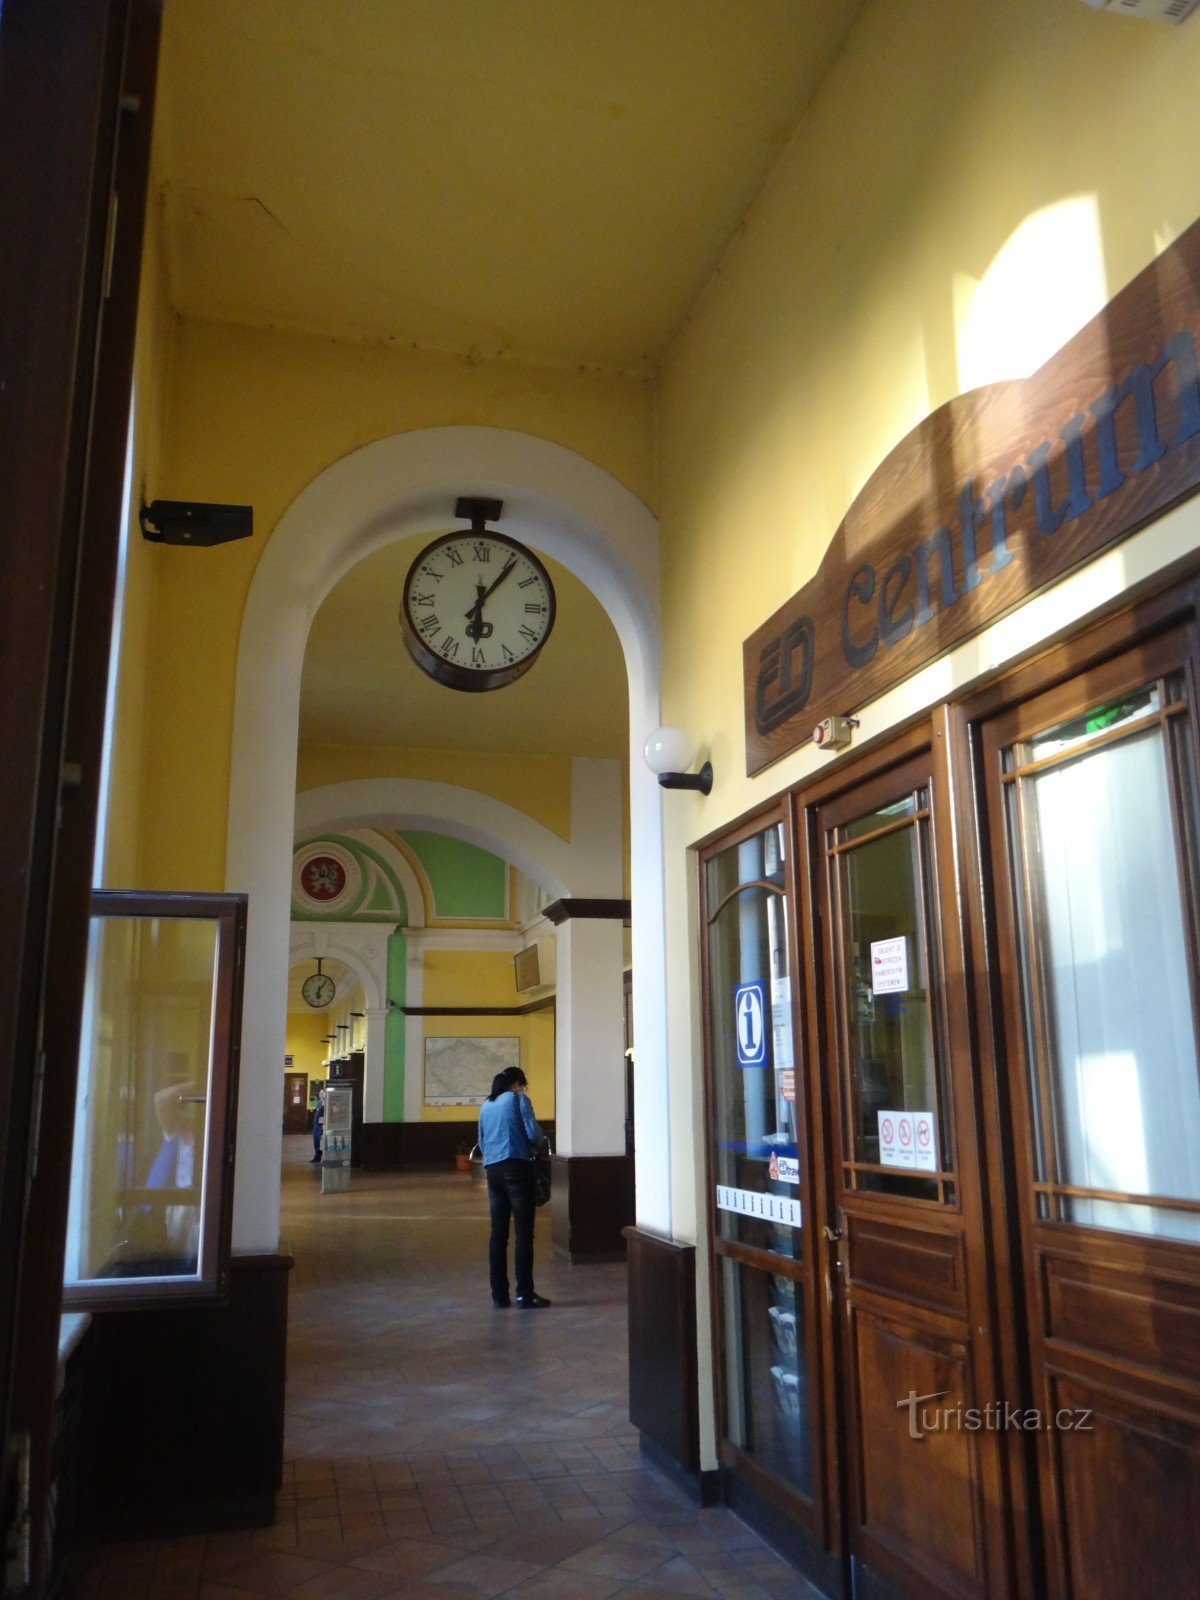 Český Těšín railway station interior